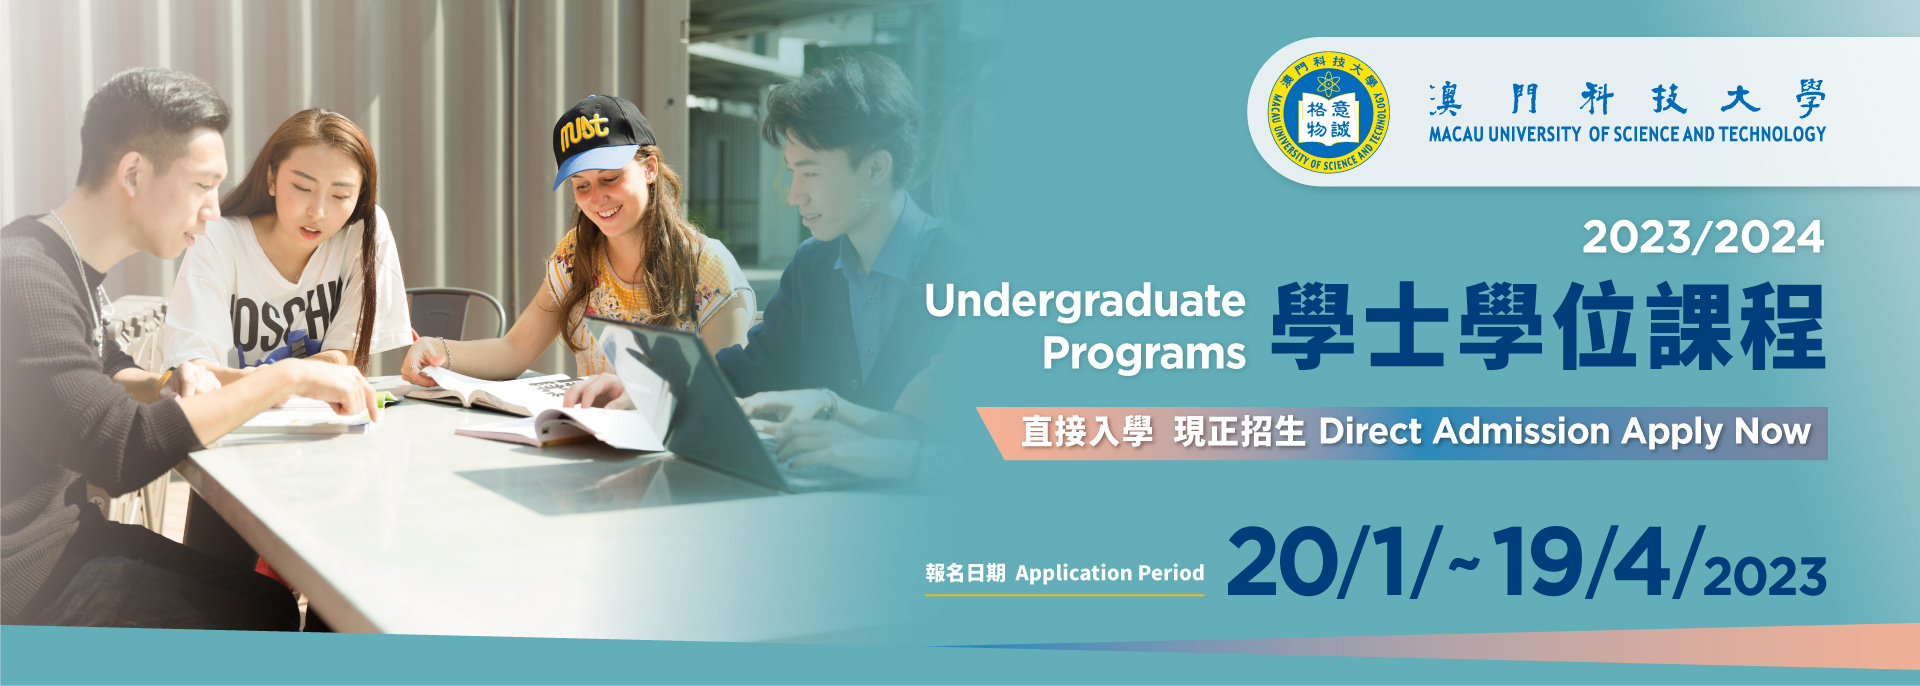 2023/2024学士学位课程 直接入学 现正招生